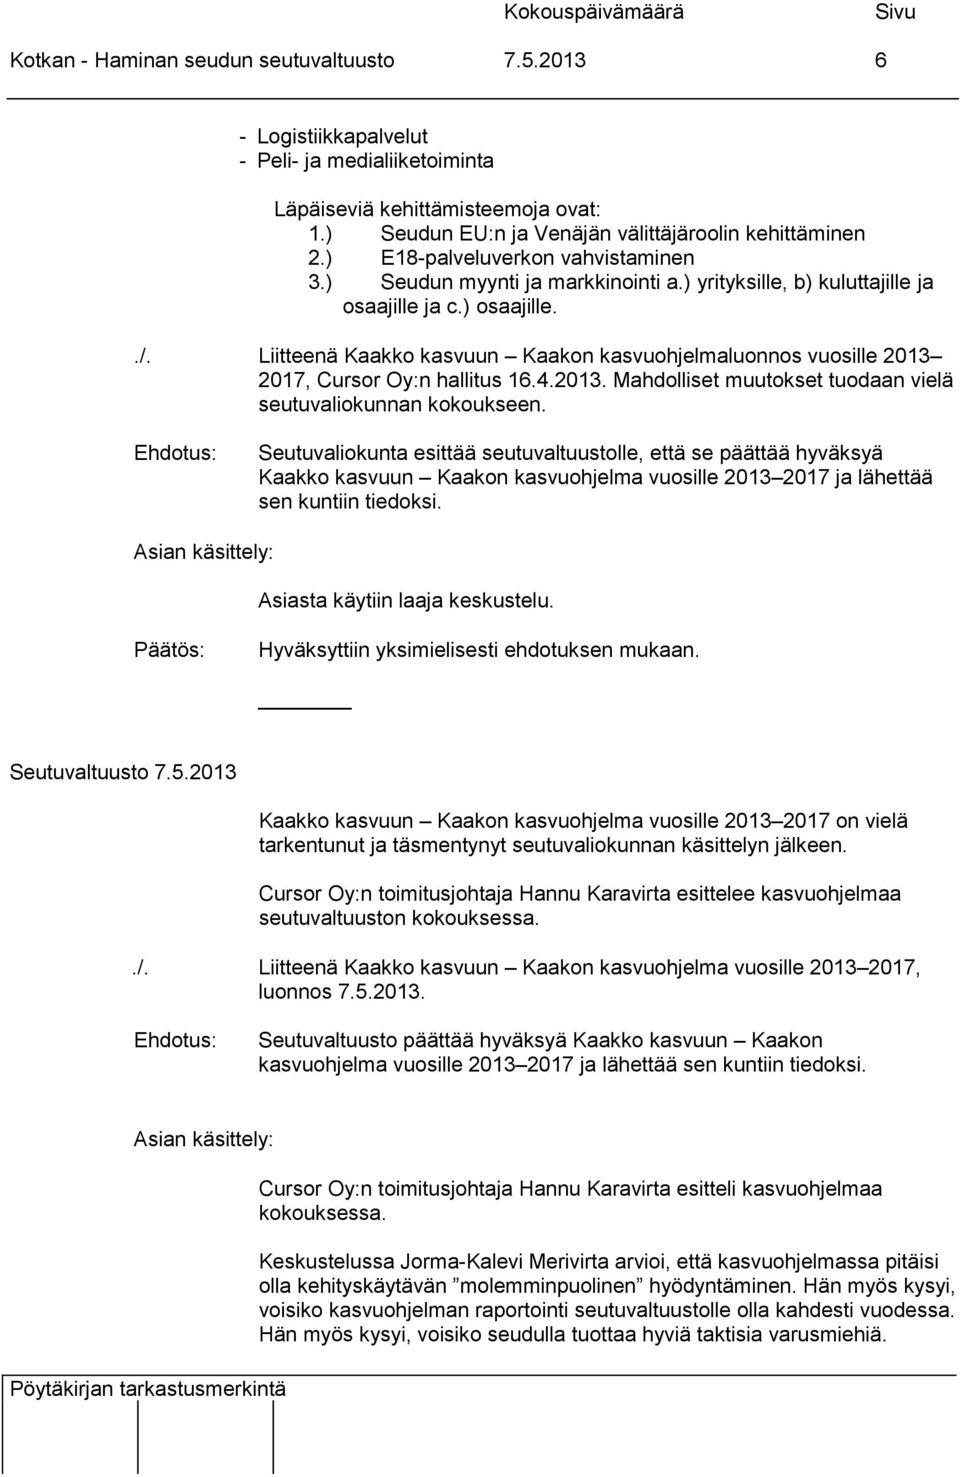 Liitteenä Kaakko kasvuun Kaakon kasvuohjelmaluonnos vuosille 2013 2017, Cursor Oy:n hallitus 16.4.2013. Mahdolliset muutokset tuodaan vielä seutuvaliokunnan kokoukseen.